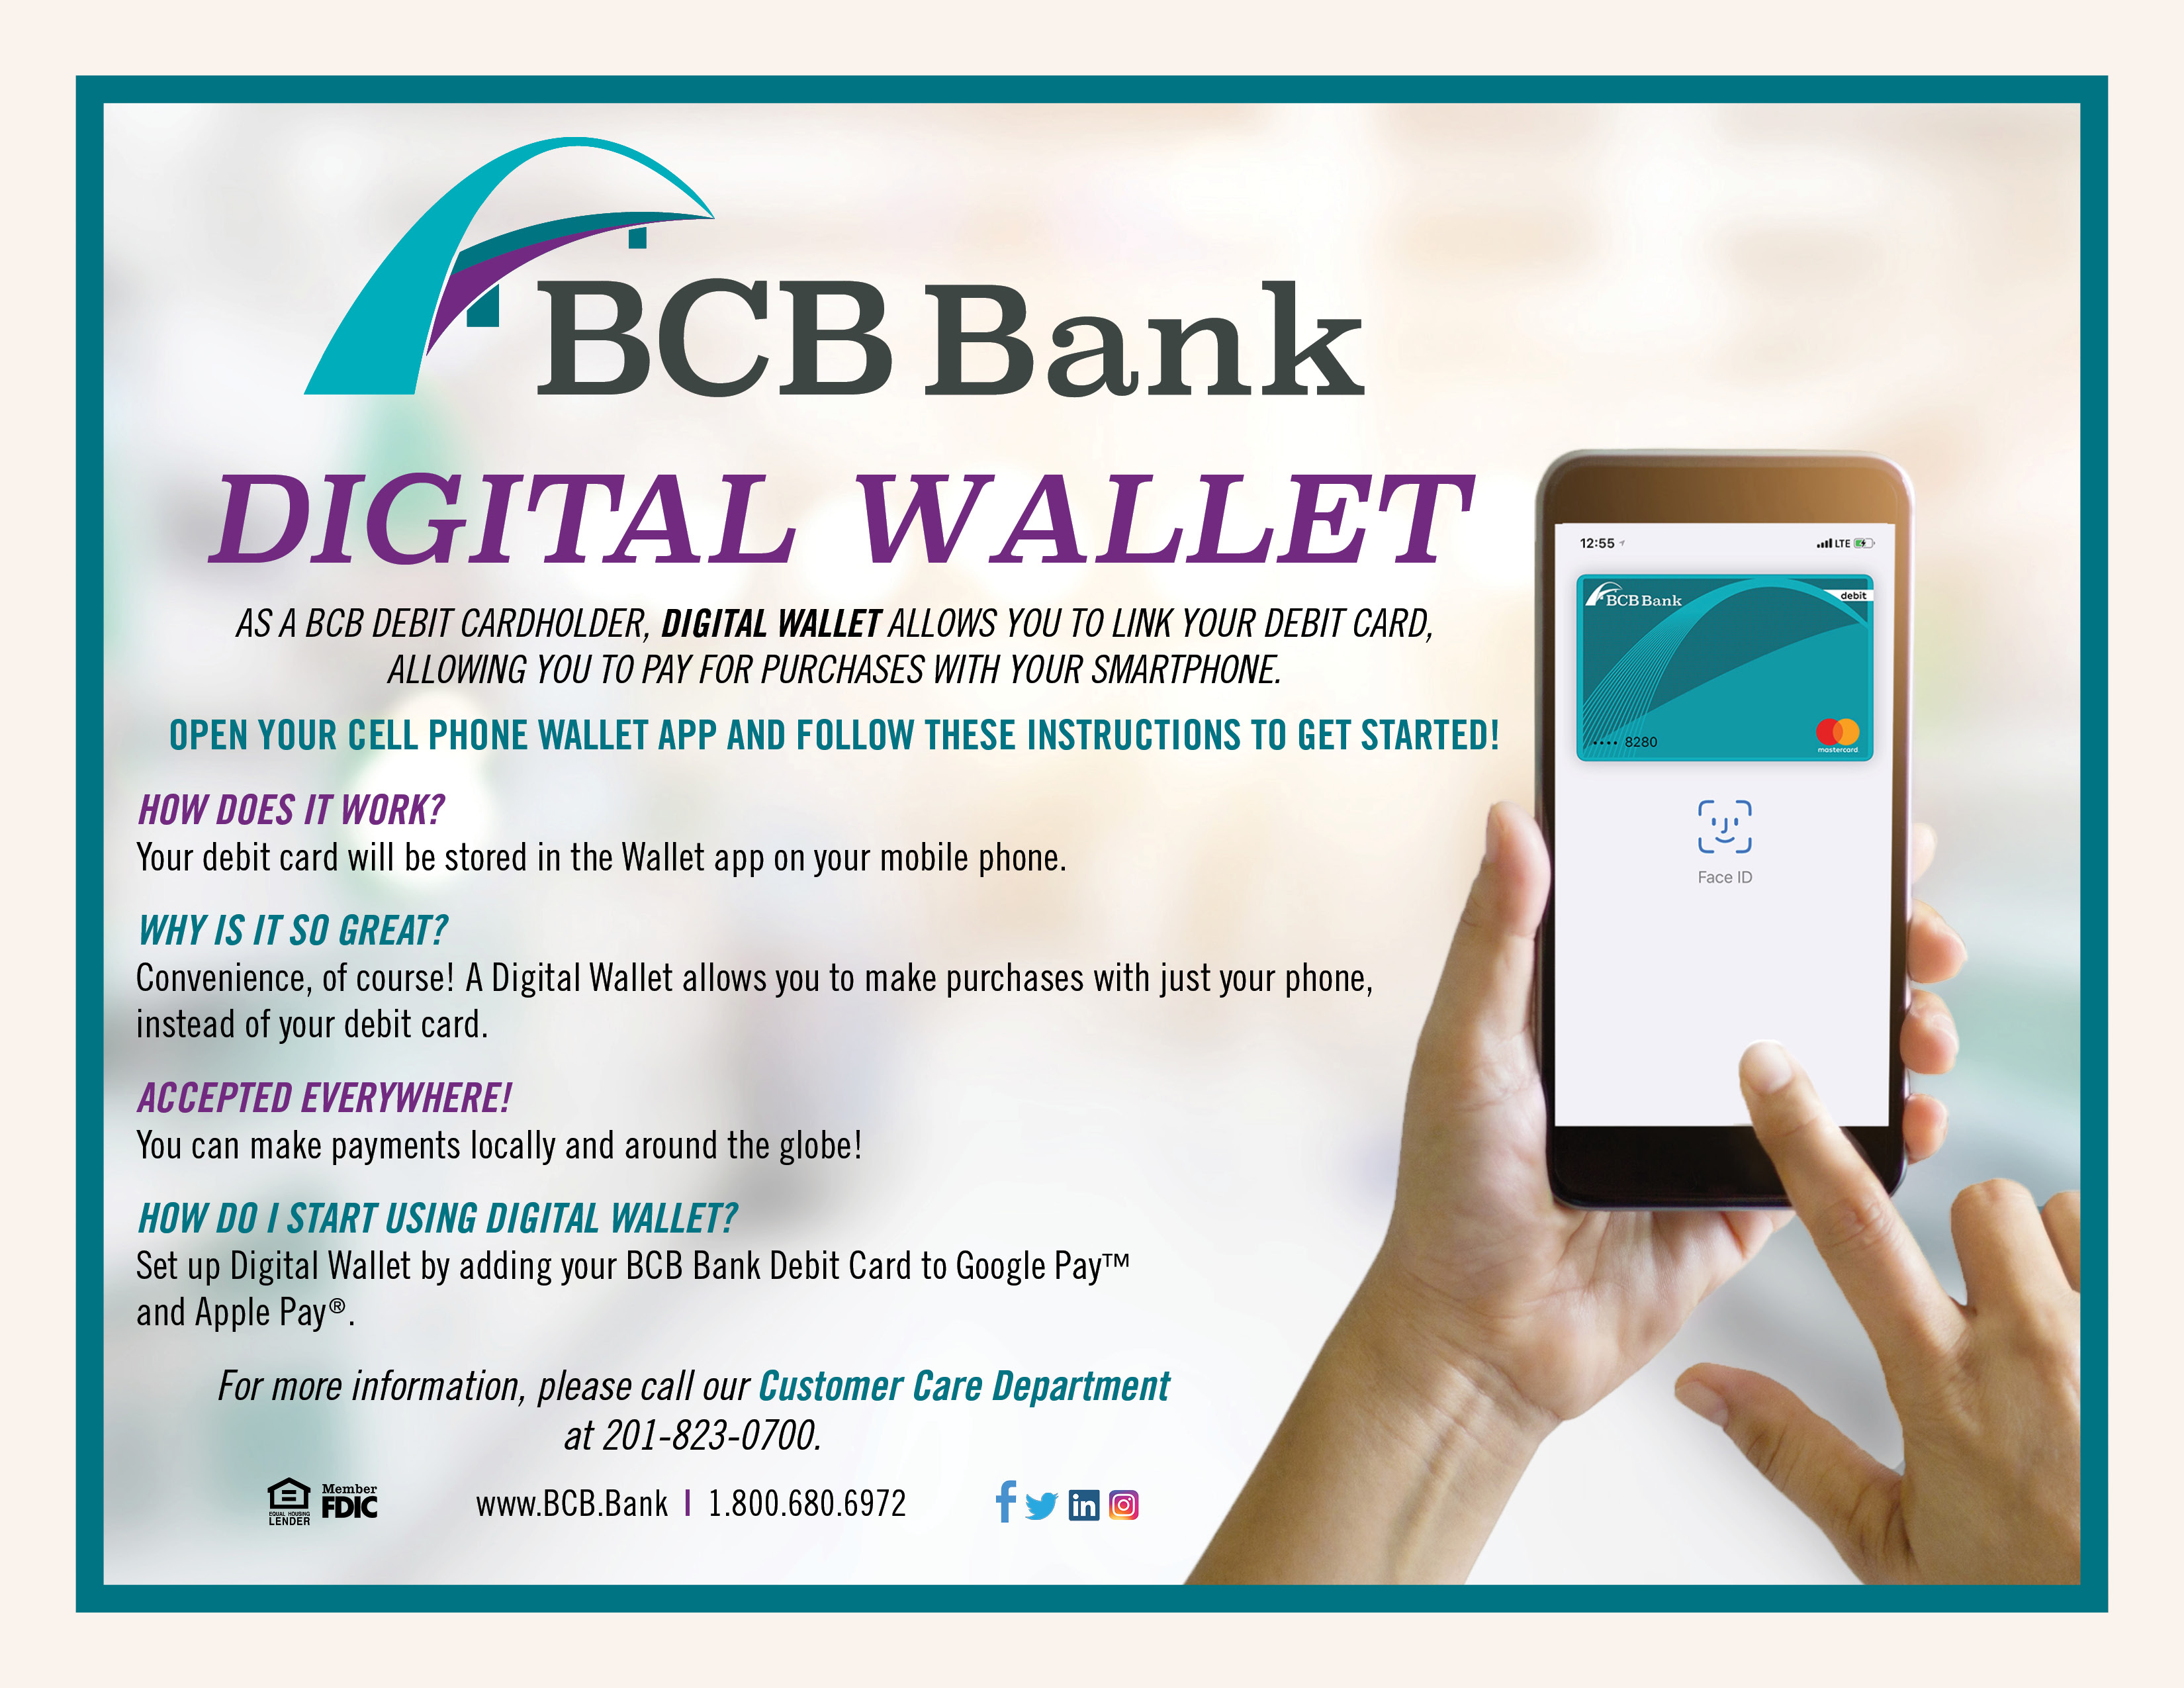 Digital Wallet from BCB Bank